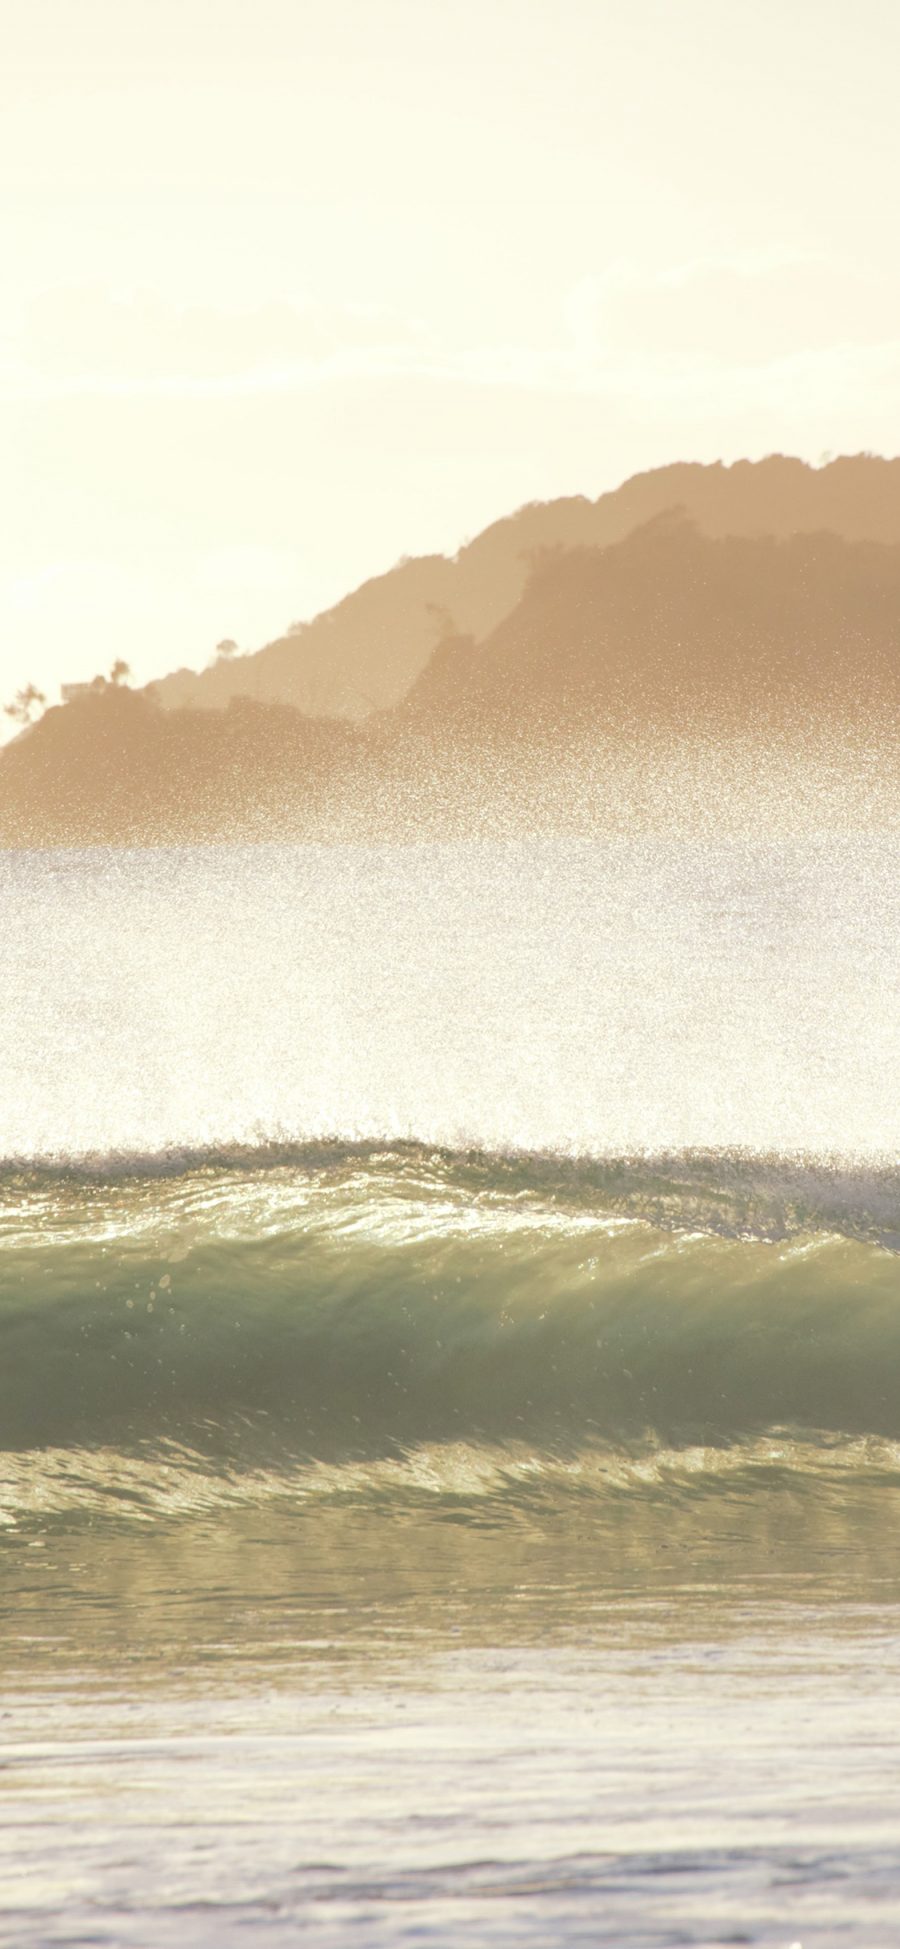 [2436×1125]海景 海水 海浪 翻涌 苹果手机壁纸图片